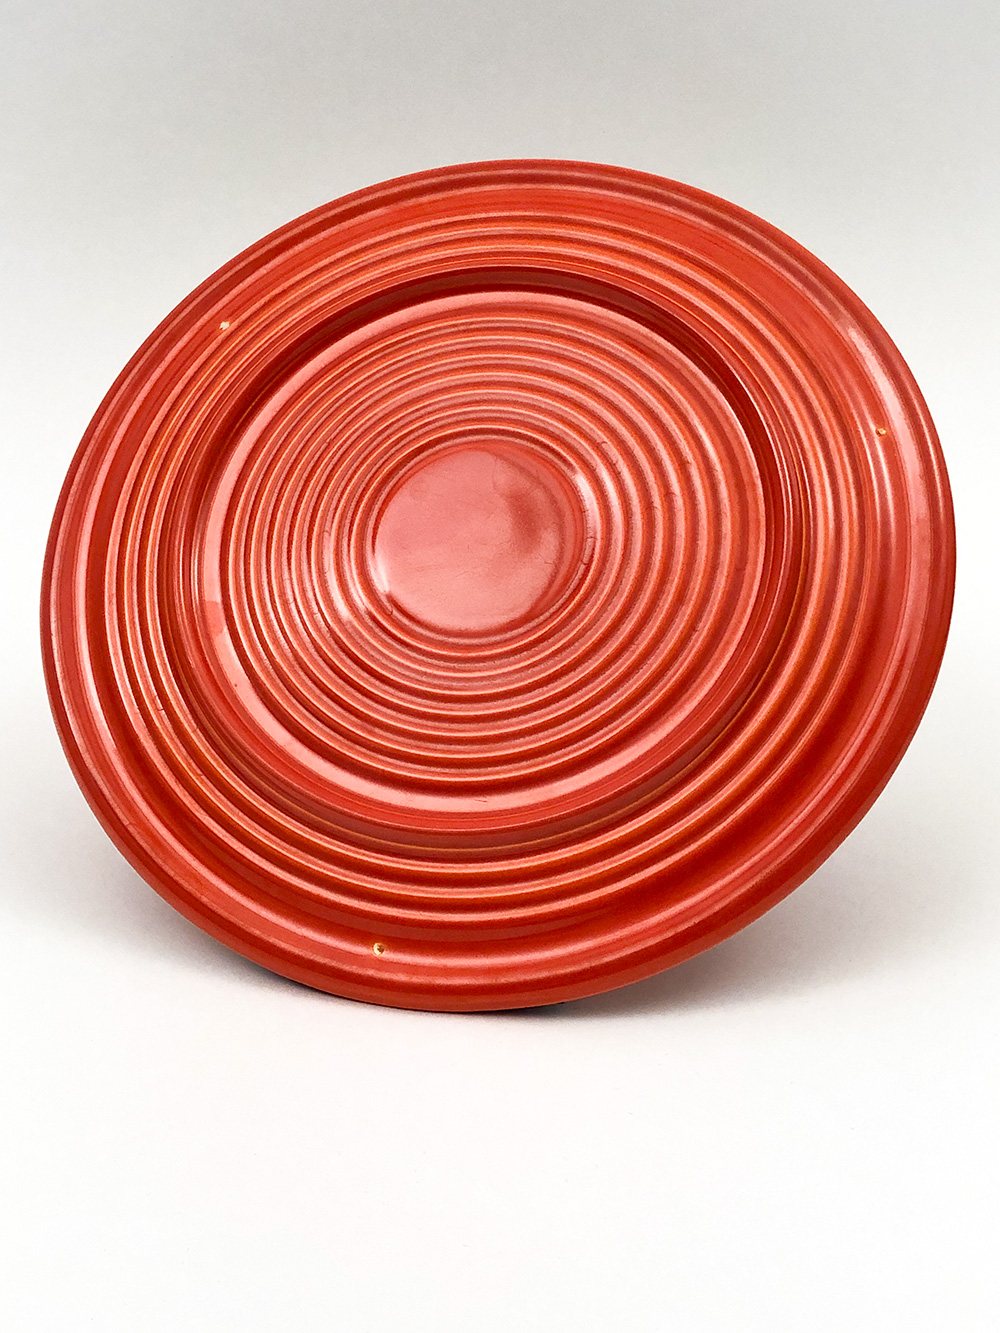 vintage fiestaware red cake plate